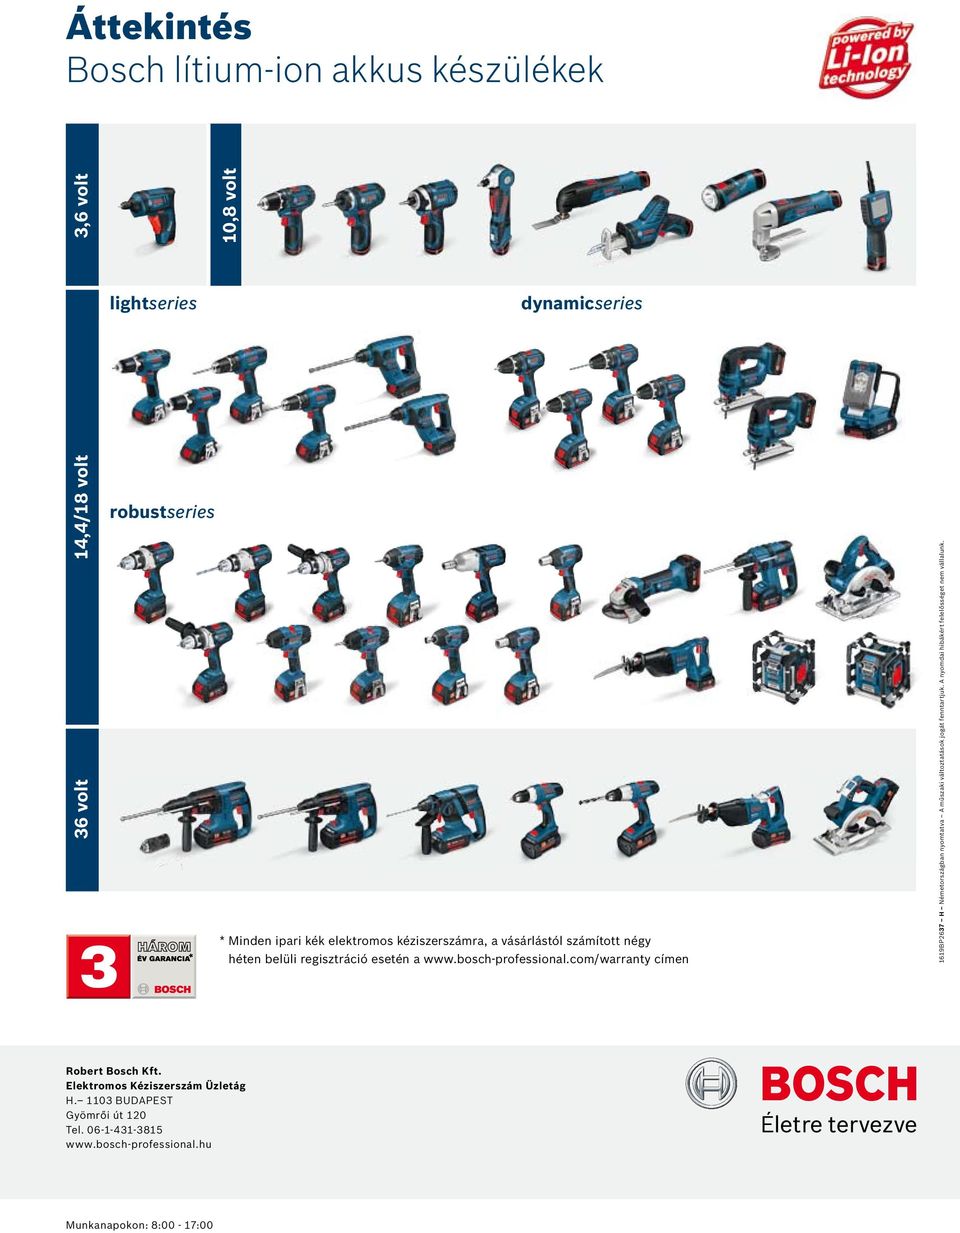 com/warranty címen 1619BP2637 H Németországban nyomtatva A műszaki változtatások jogát enntartjuk.